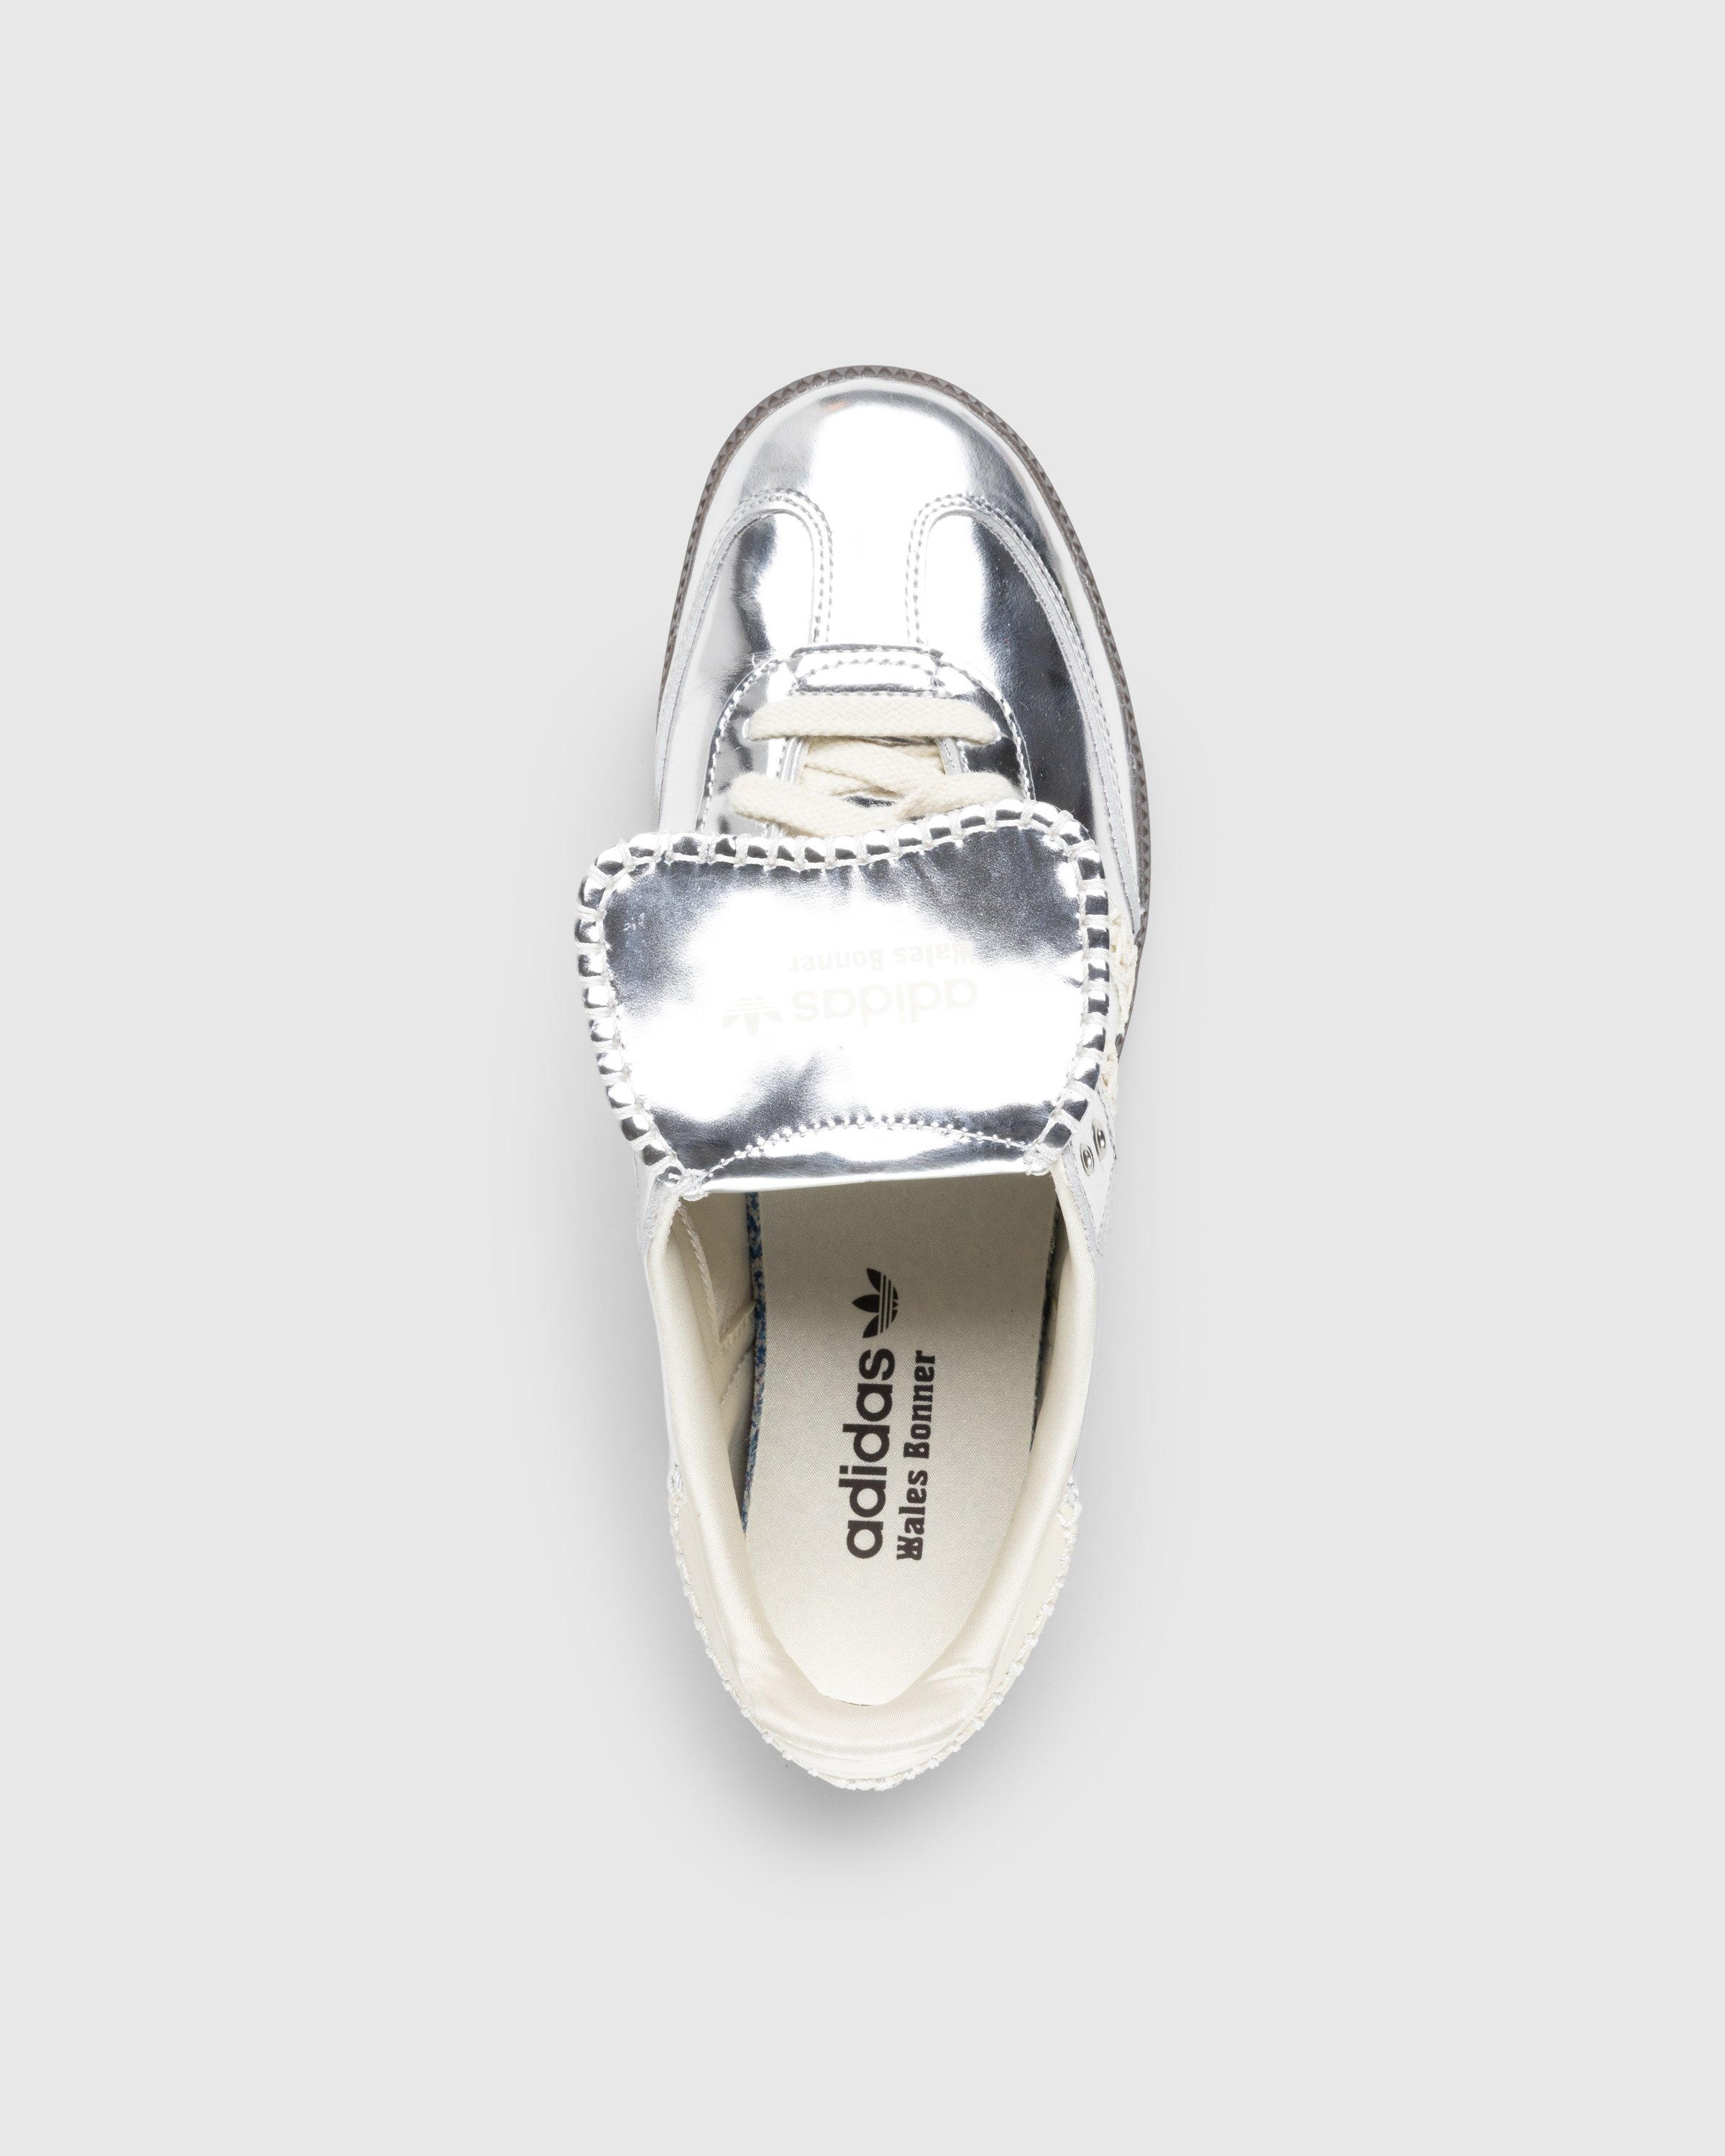 Adidas x Wales Bonner - Samba Metallic Silver/Cream White/Grey - Footwear - Silver - Image 5